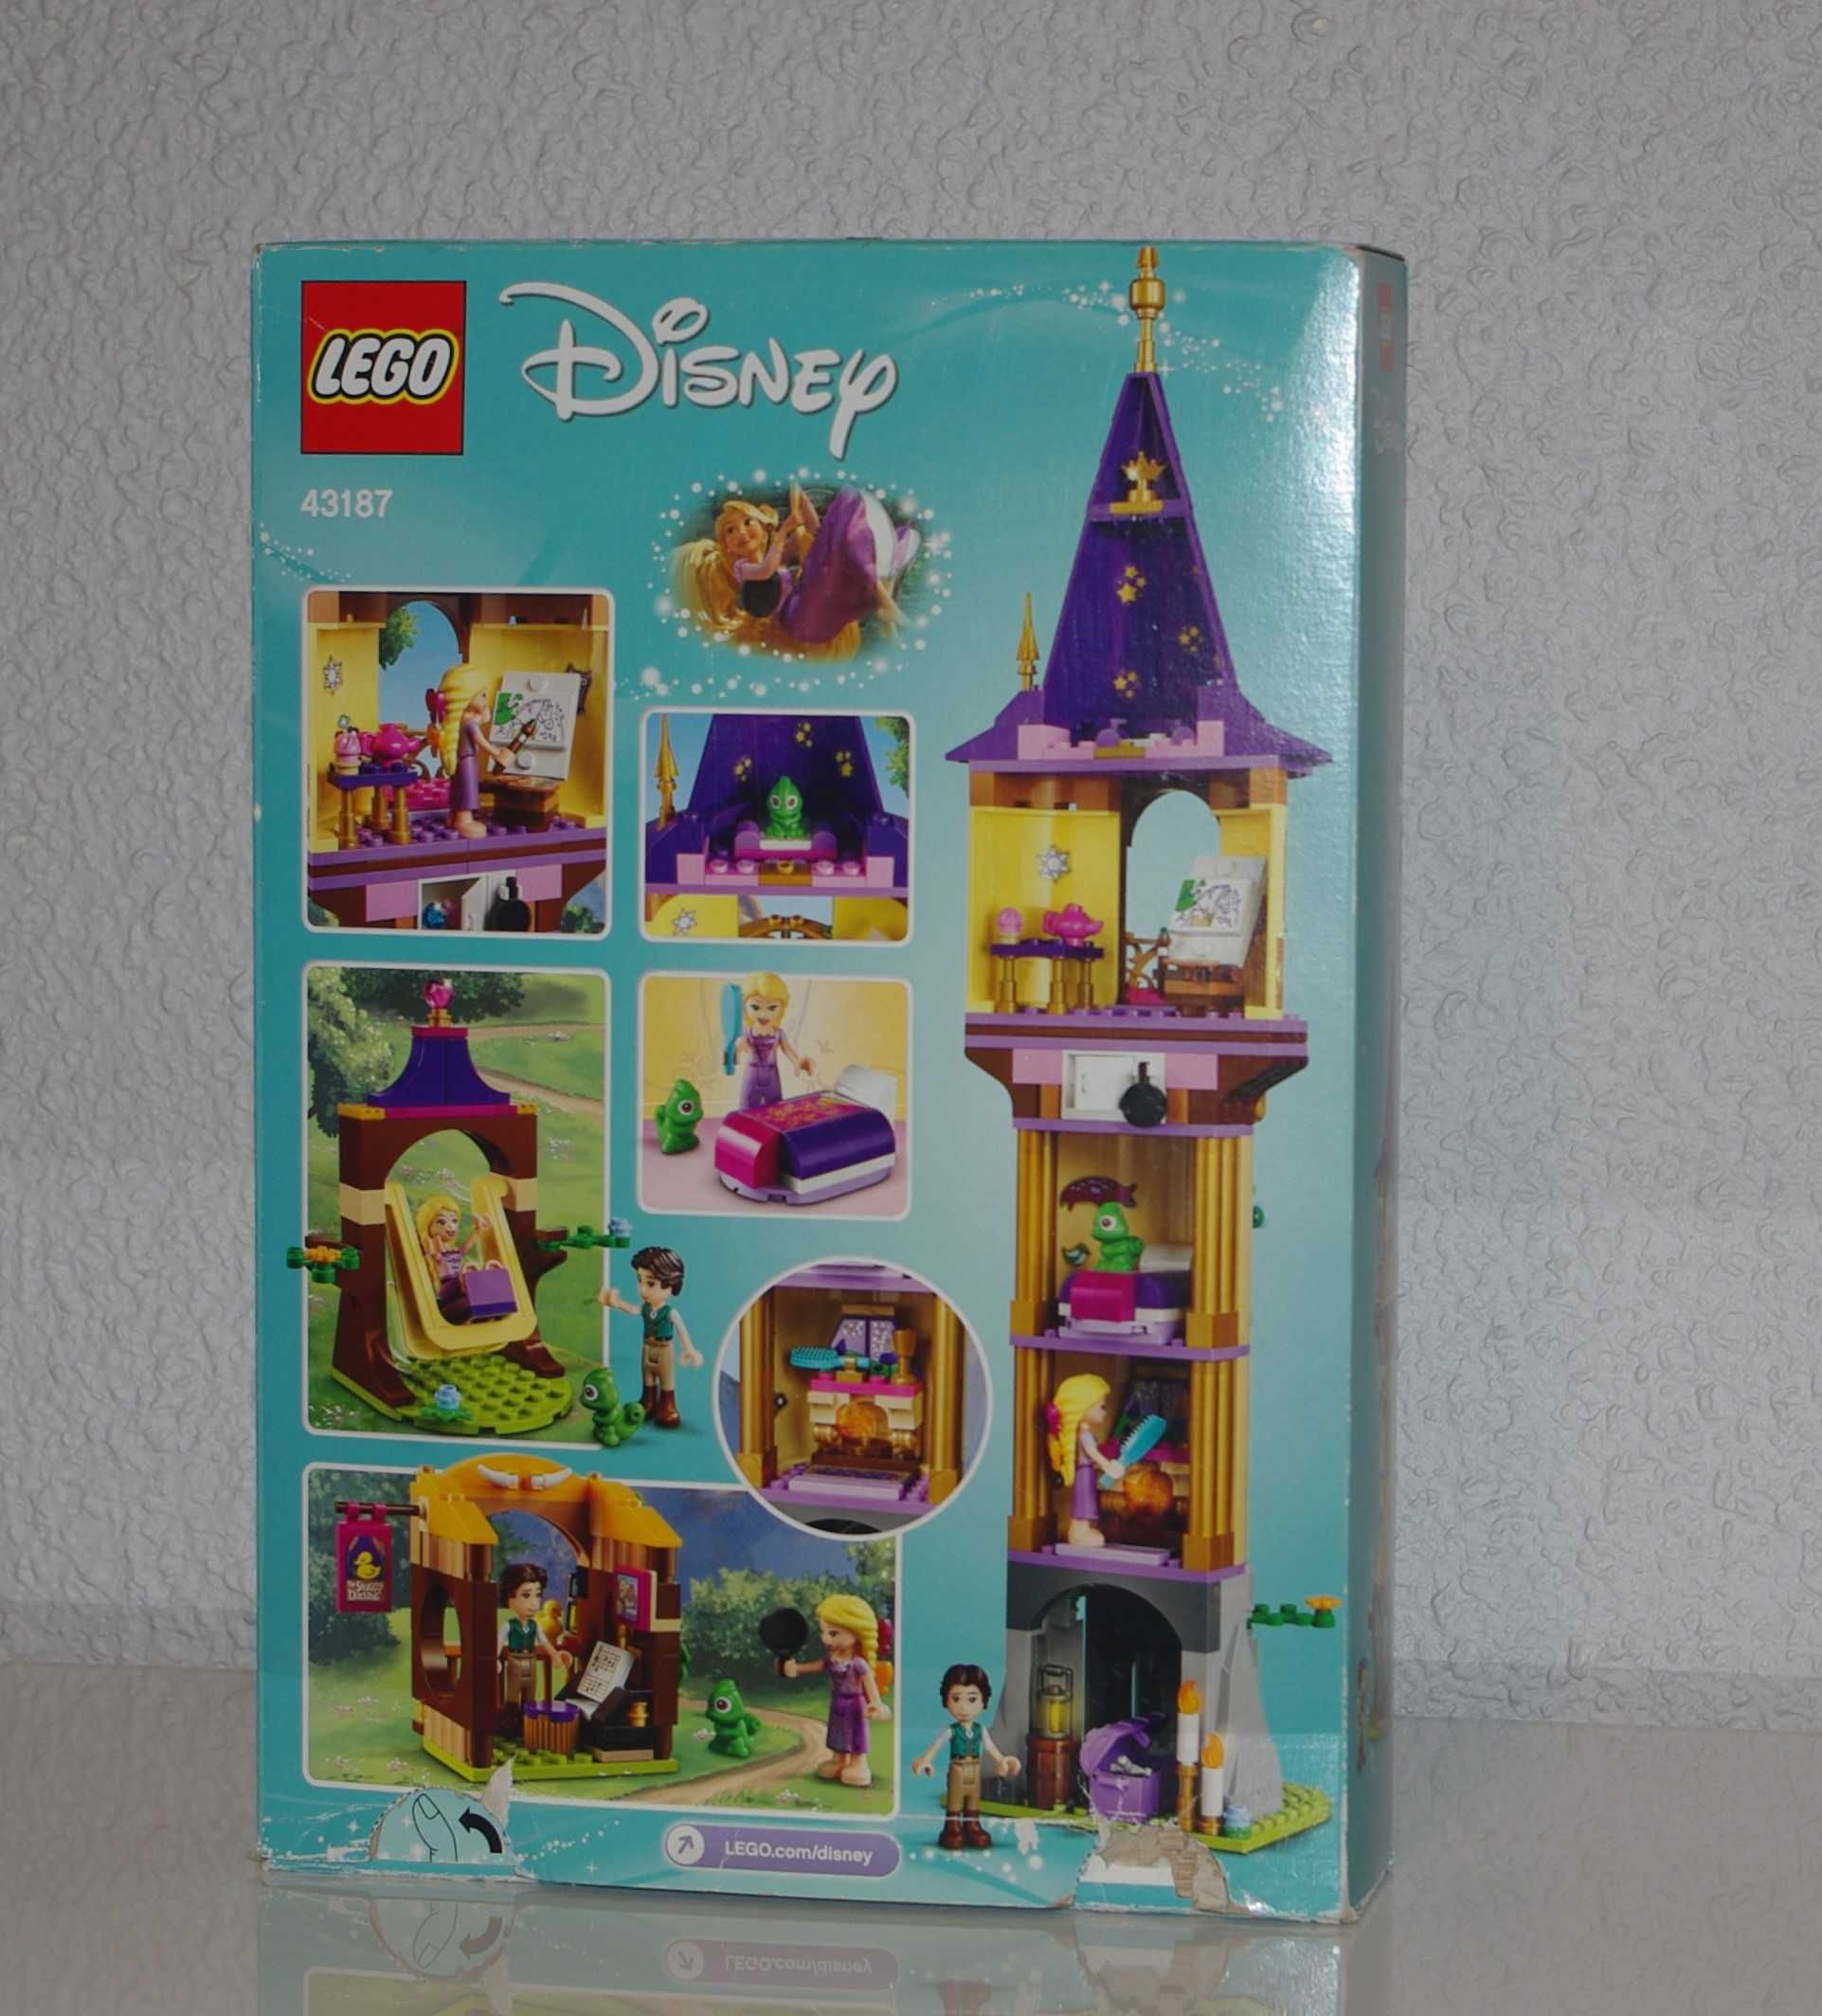 LEGO Friends Disney 43187 Wieża Roszpunki kompletne